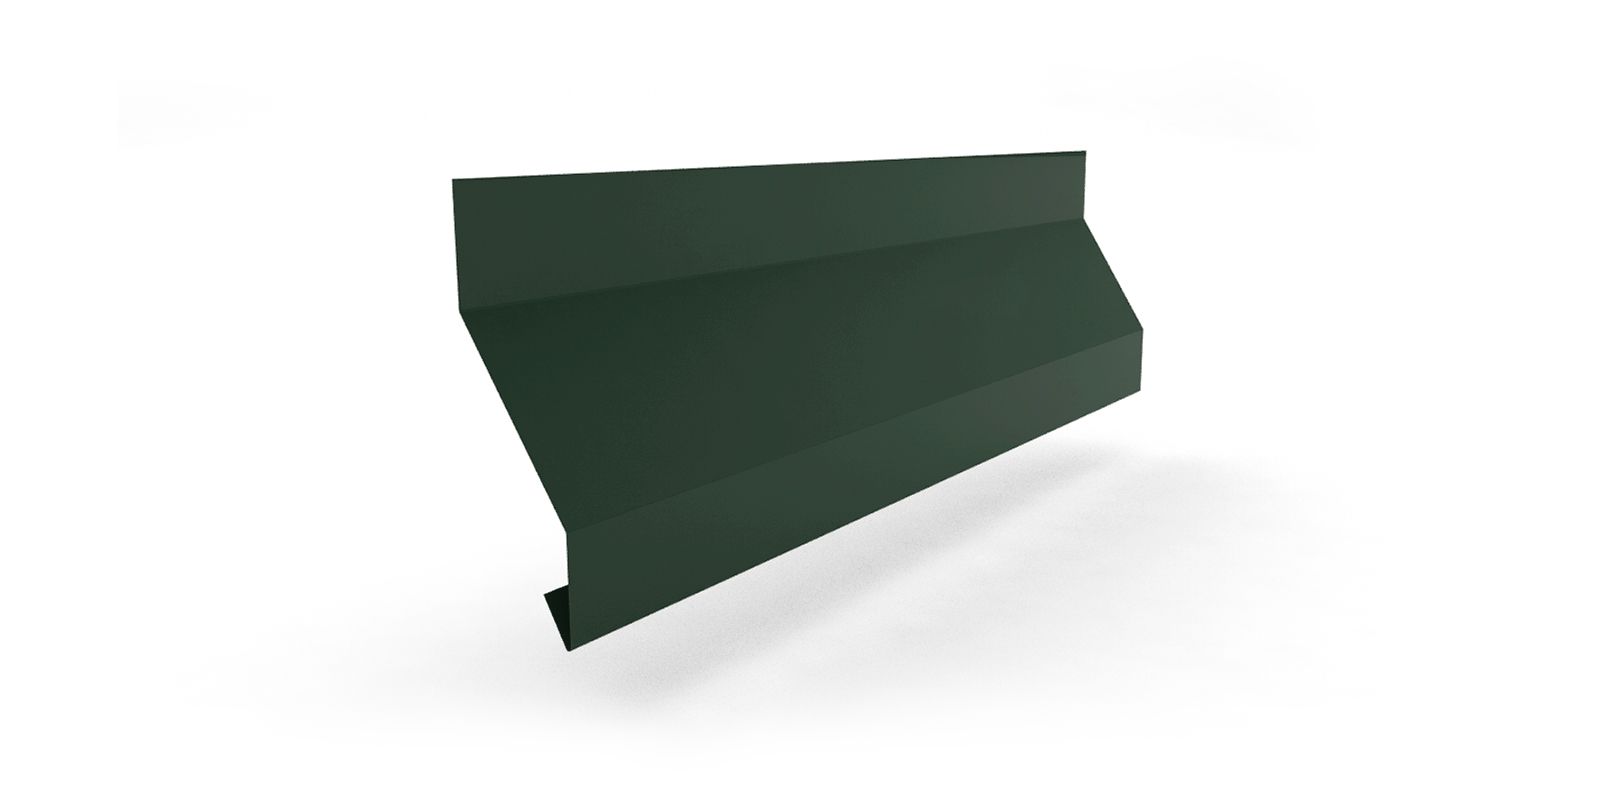 Купить планку отлива цокольного с покрытием GreenCoat® Pural® толщиной 0,50 мм в цвете RR 11